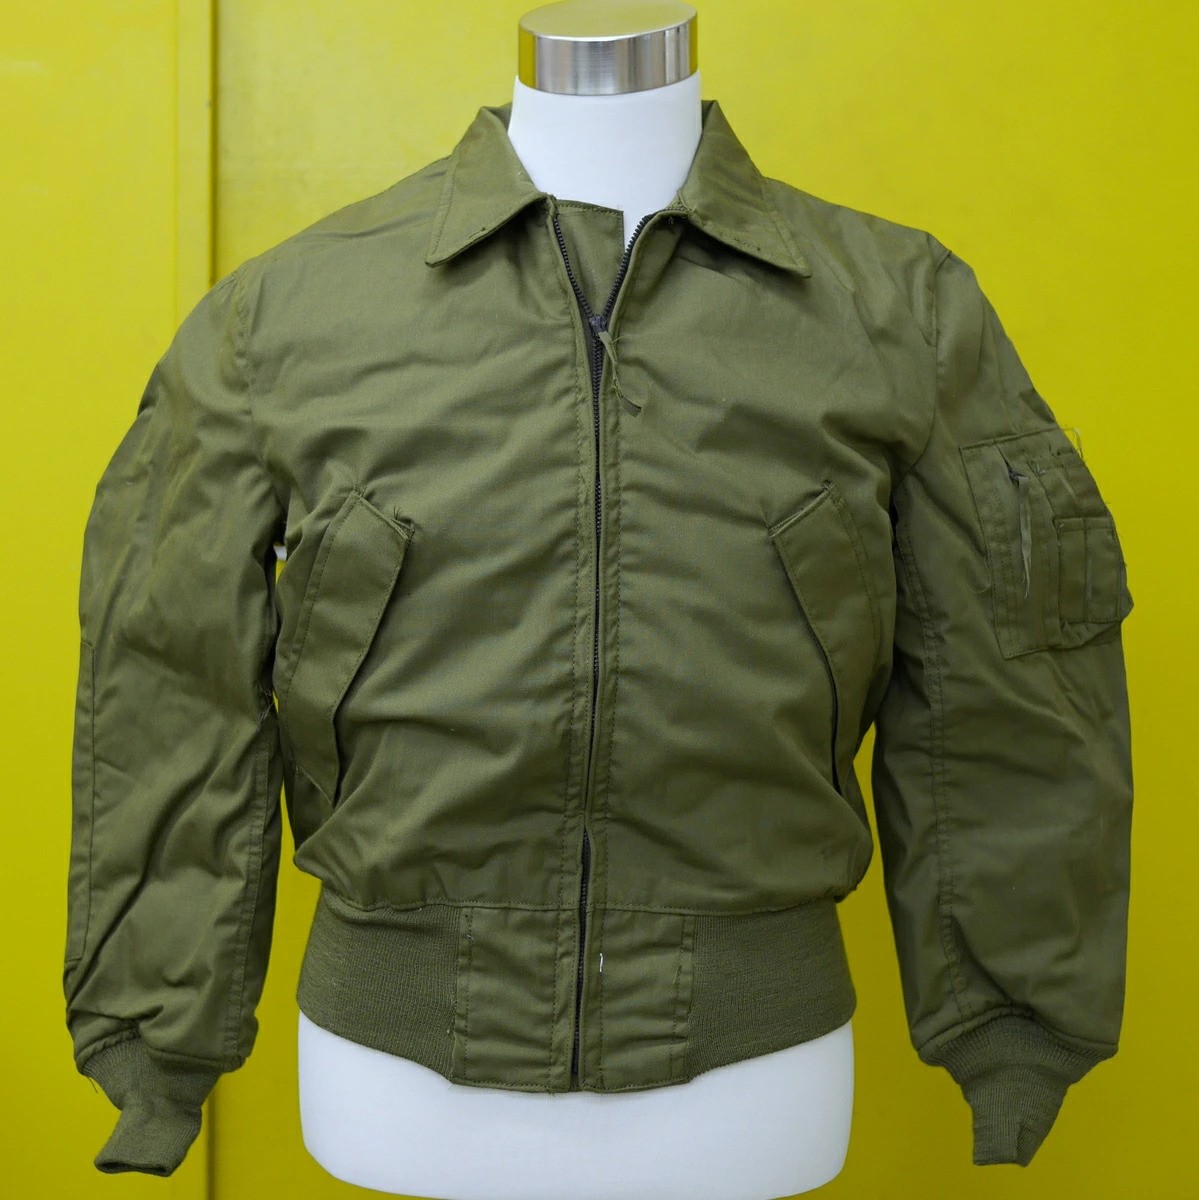 Ironing CVC Jacket - 100% Aramid | Vintage Leather Jackets Forum